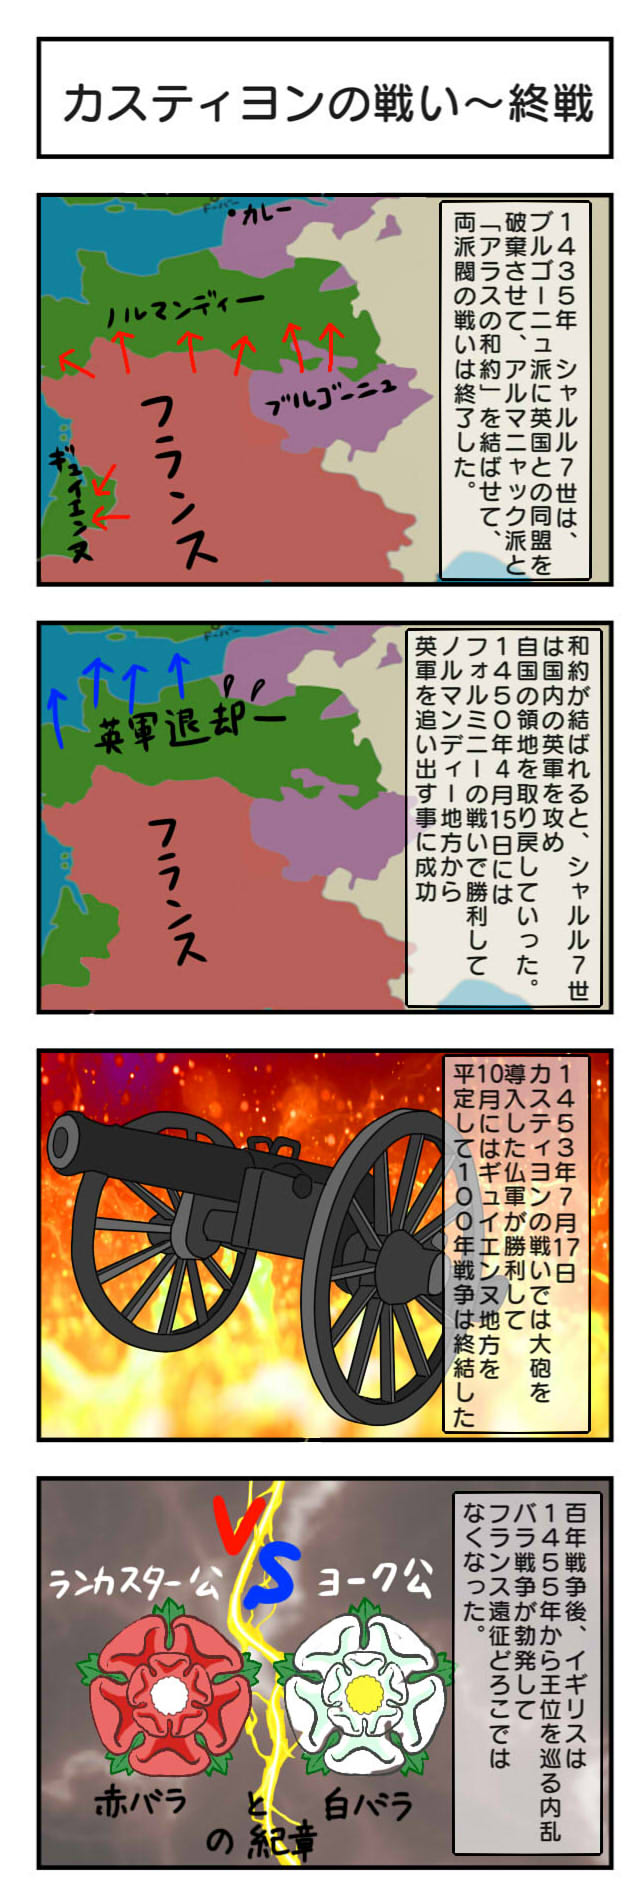 カスティヨンの戦い～終戦_4コマ漫画